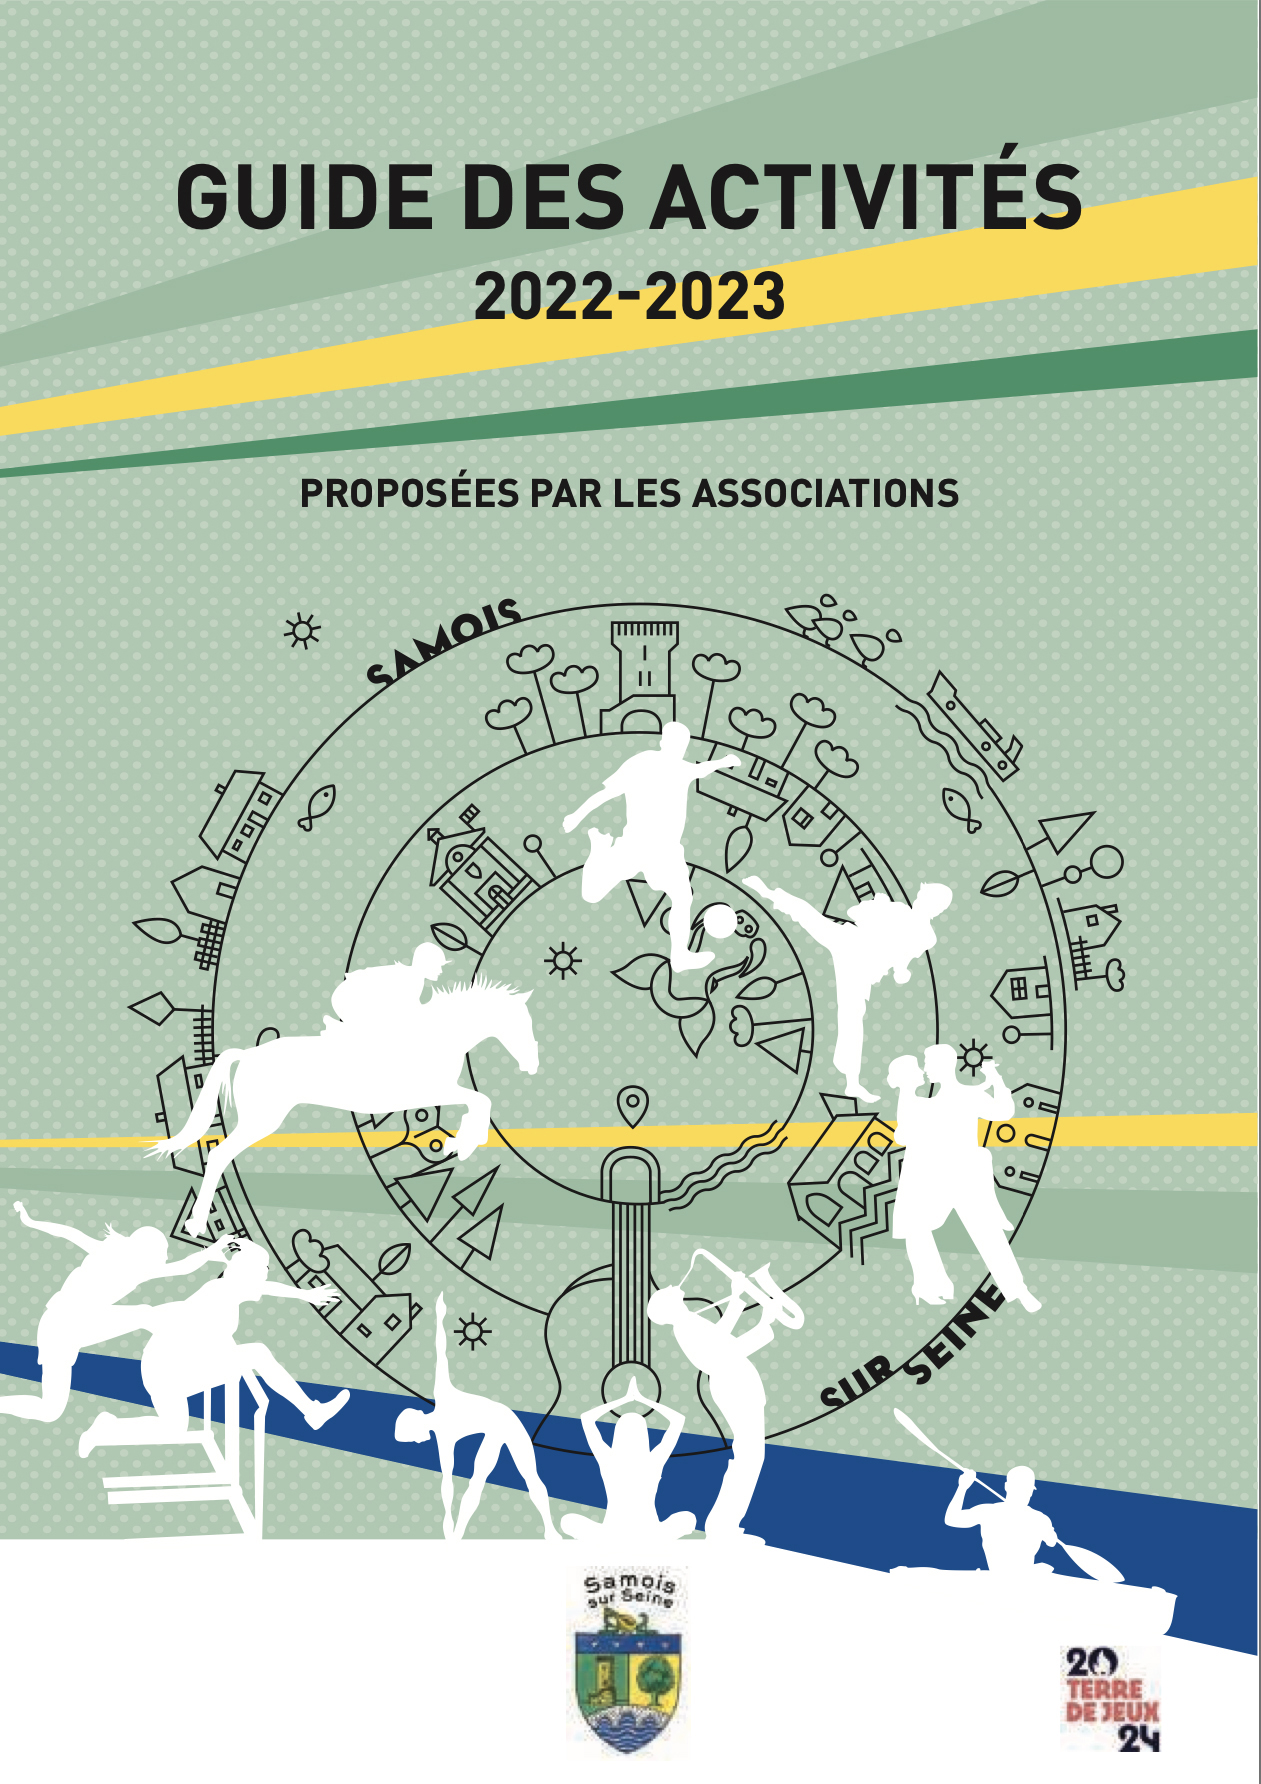 guide-des-activites-samois-sur-seine-2022-2023-1